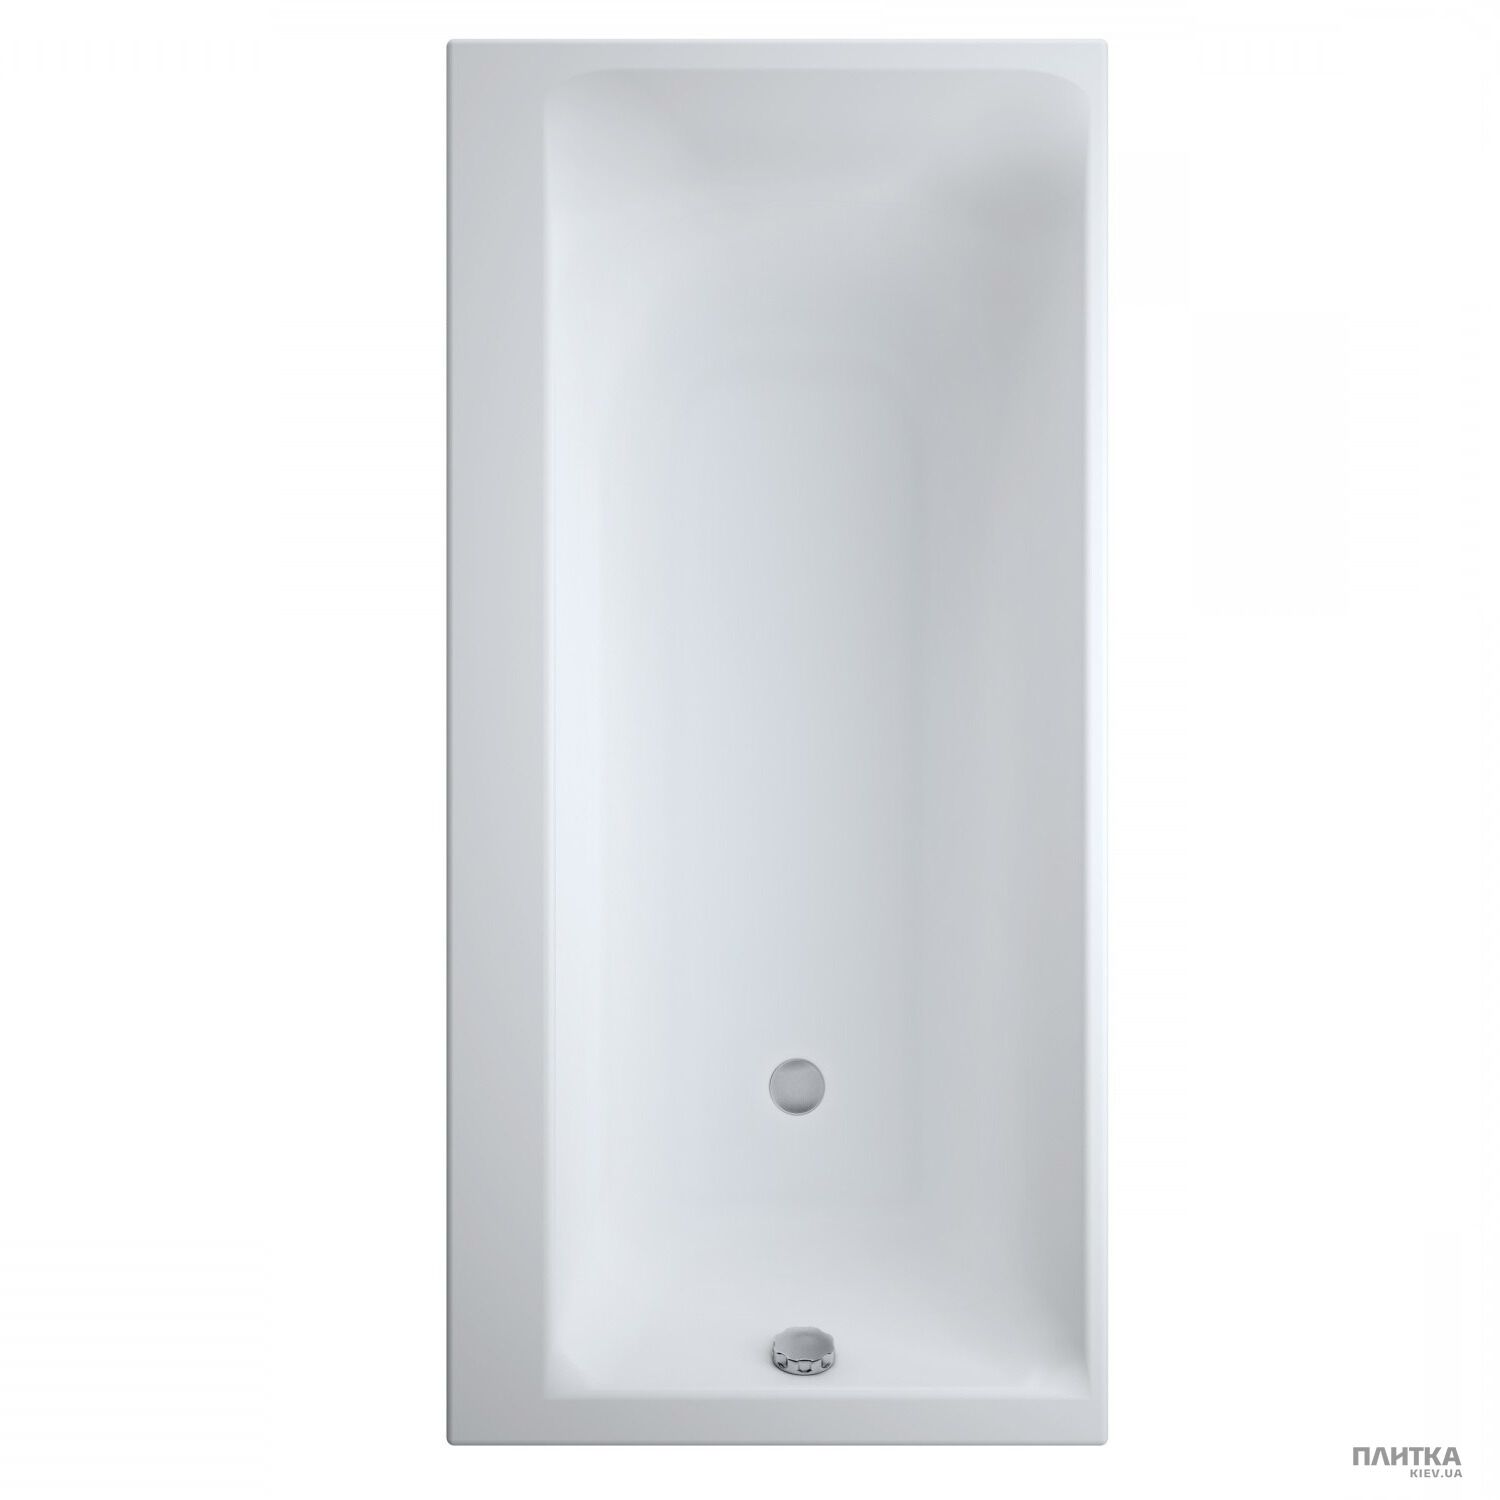 Акриловая ванна Cersanit Smart Ванна прямоугольная с креплением 170x80 левая белый